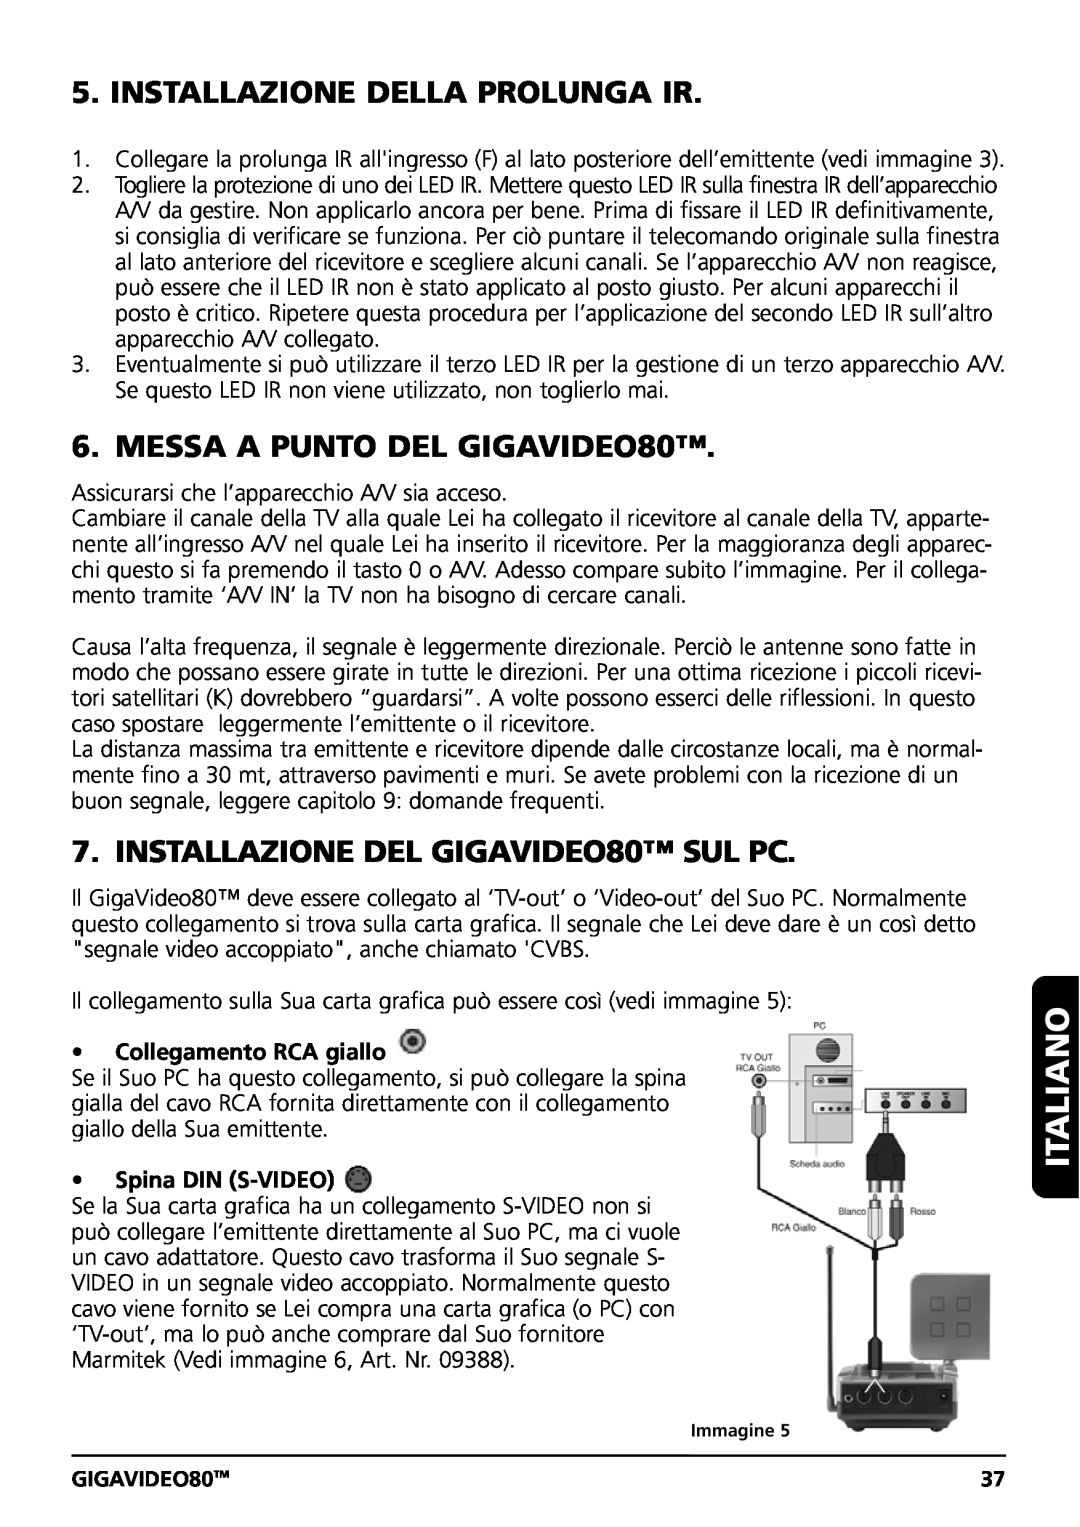 Marmitek Installazione Della Prolunga Ir, MESSA A PUNTO DEL GIGAVIDEO80, INSTALLAZIONE DEL GIGAVIDEO80 SUL PC, Italiano 